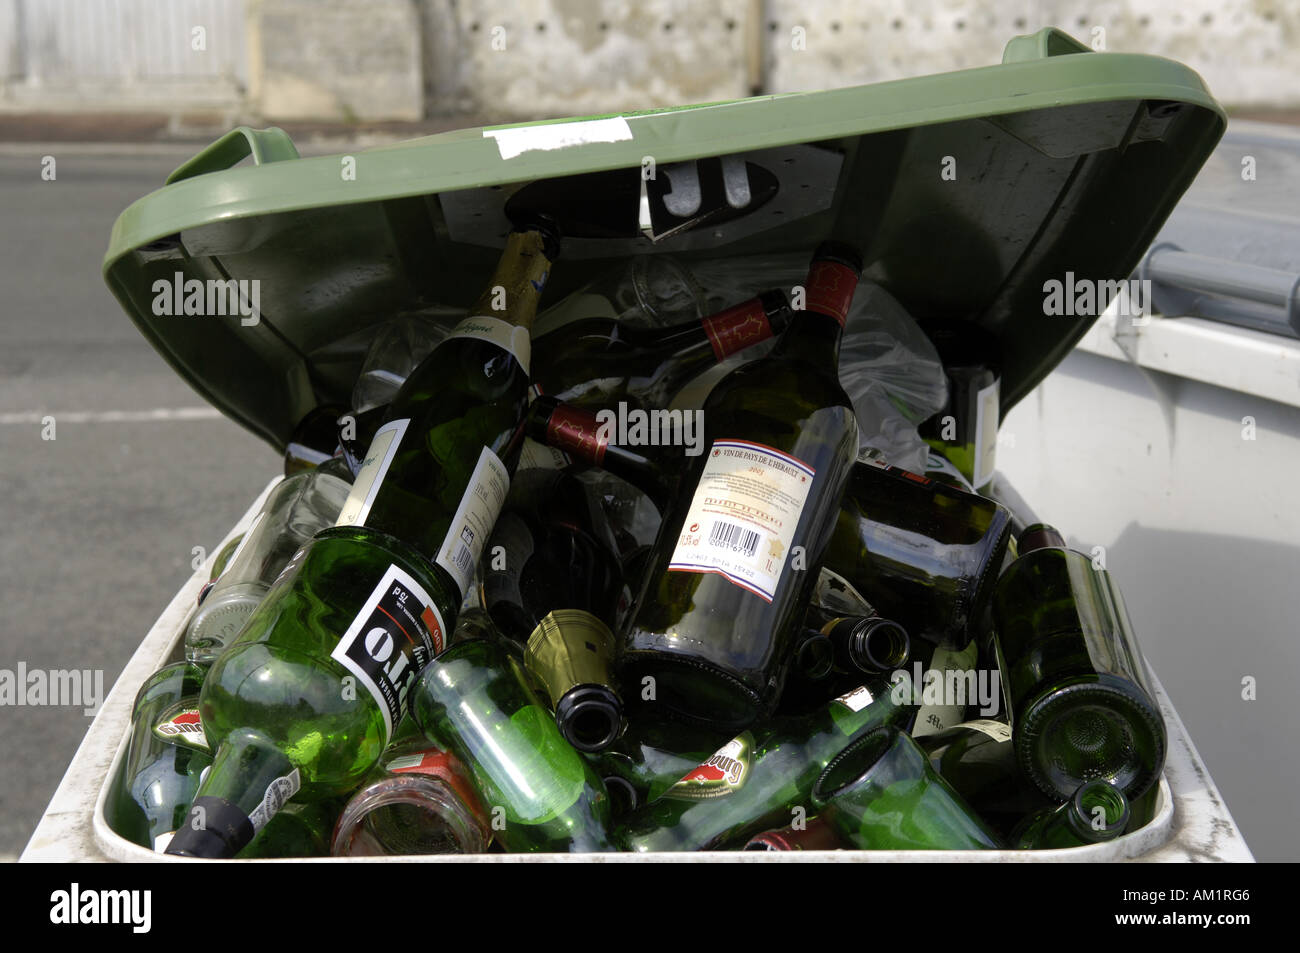 Flasche Entsorgung Leergut leere Alkohol Wein vin Vino voll trinken Binge  Konzept Alkohol Charente Charentais maritime Frankreich frenc  Stockfotografie - Alamy